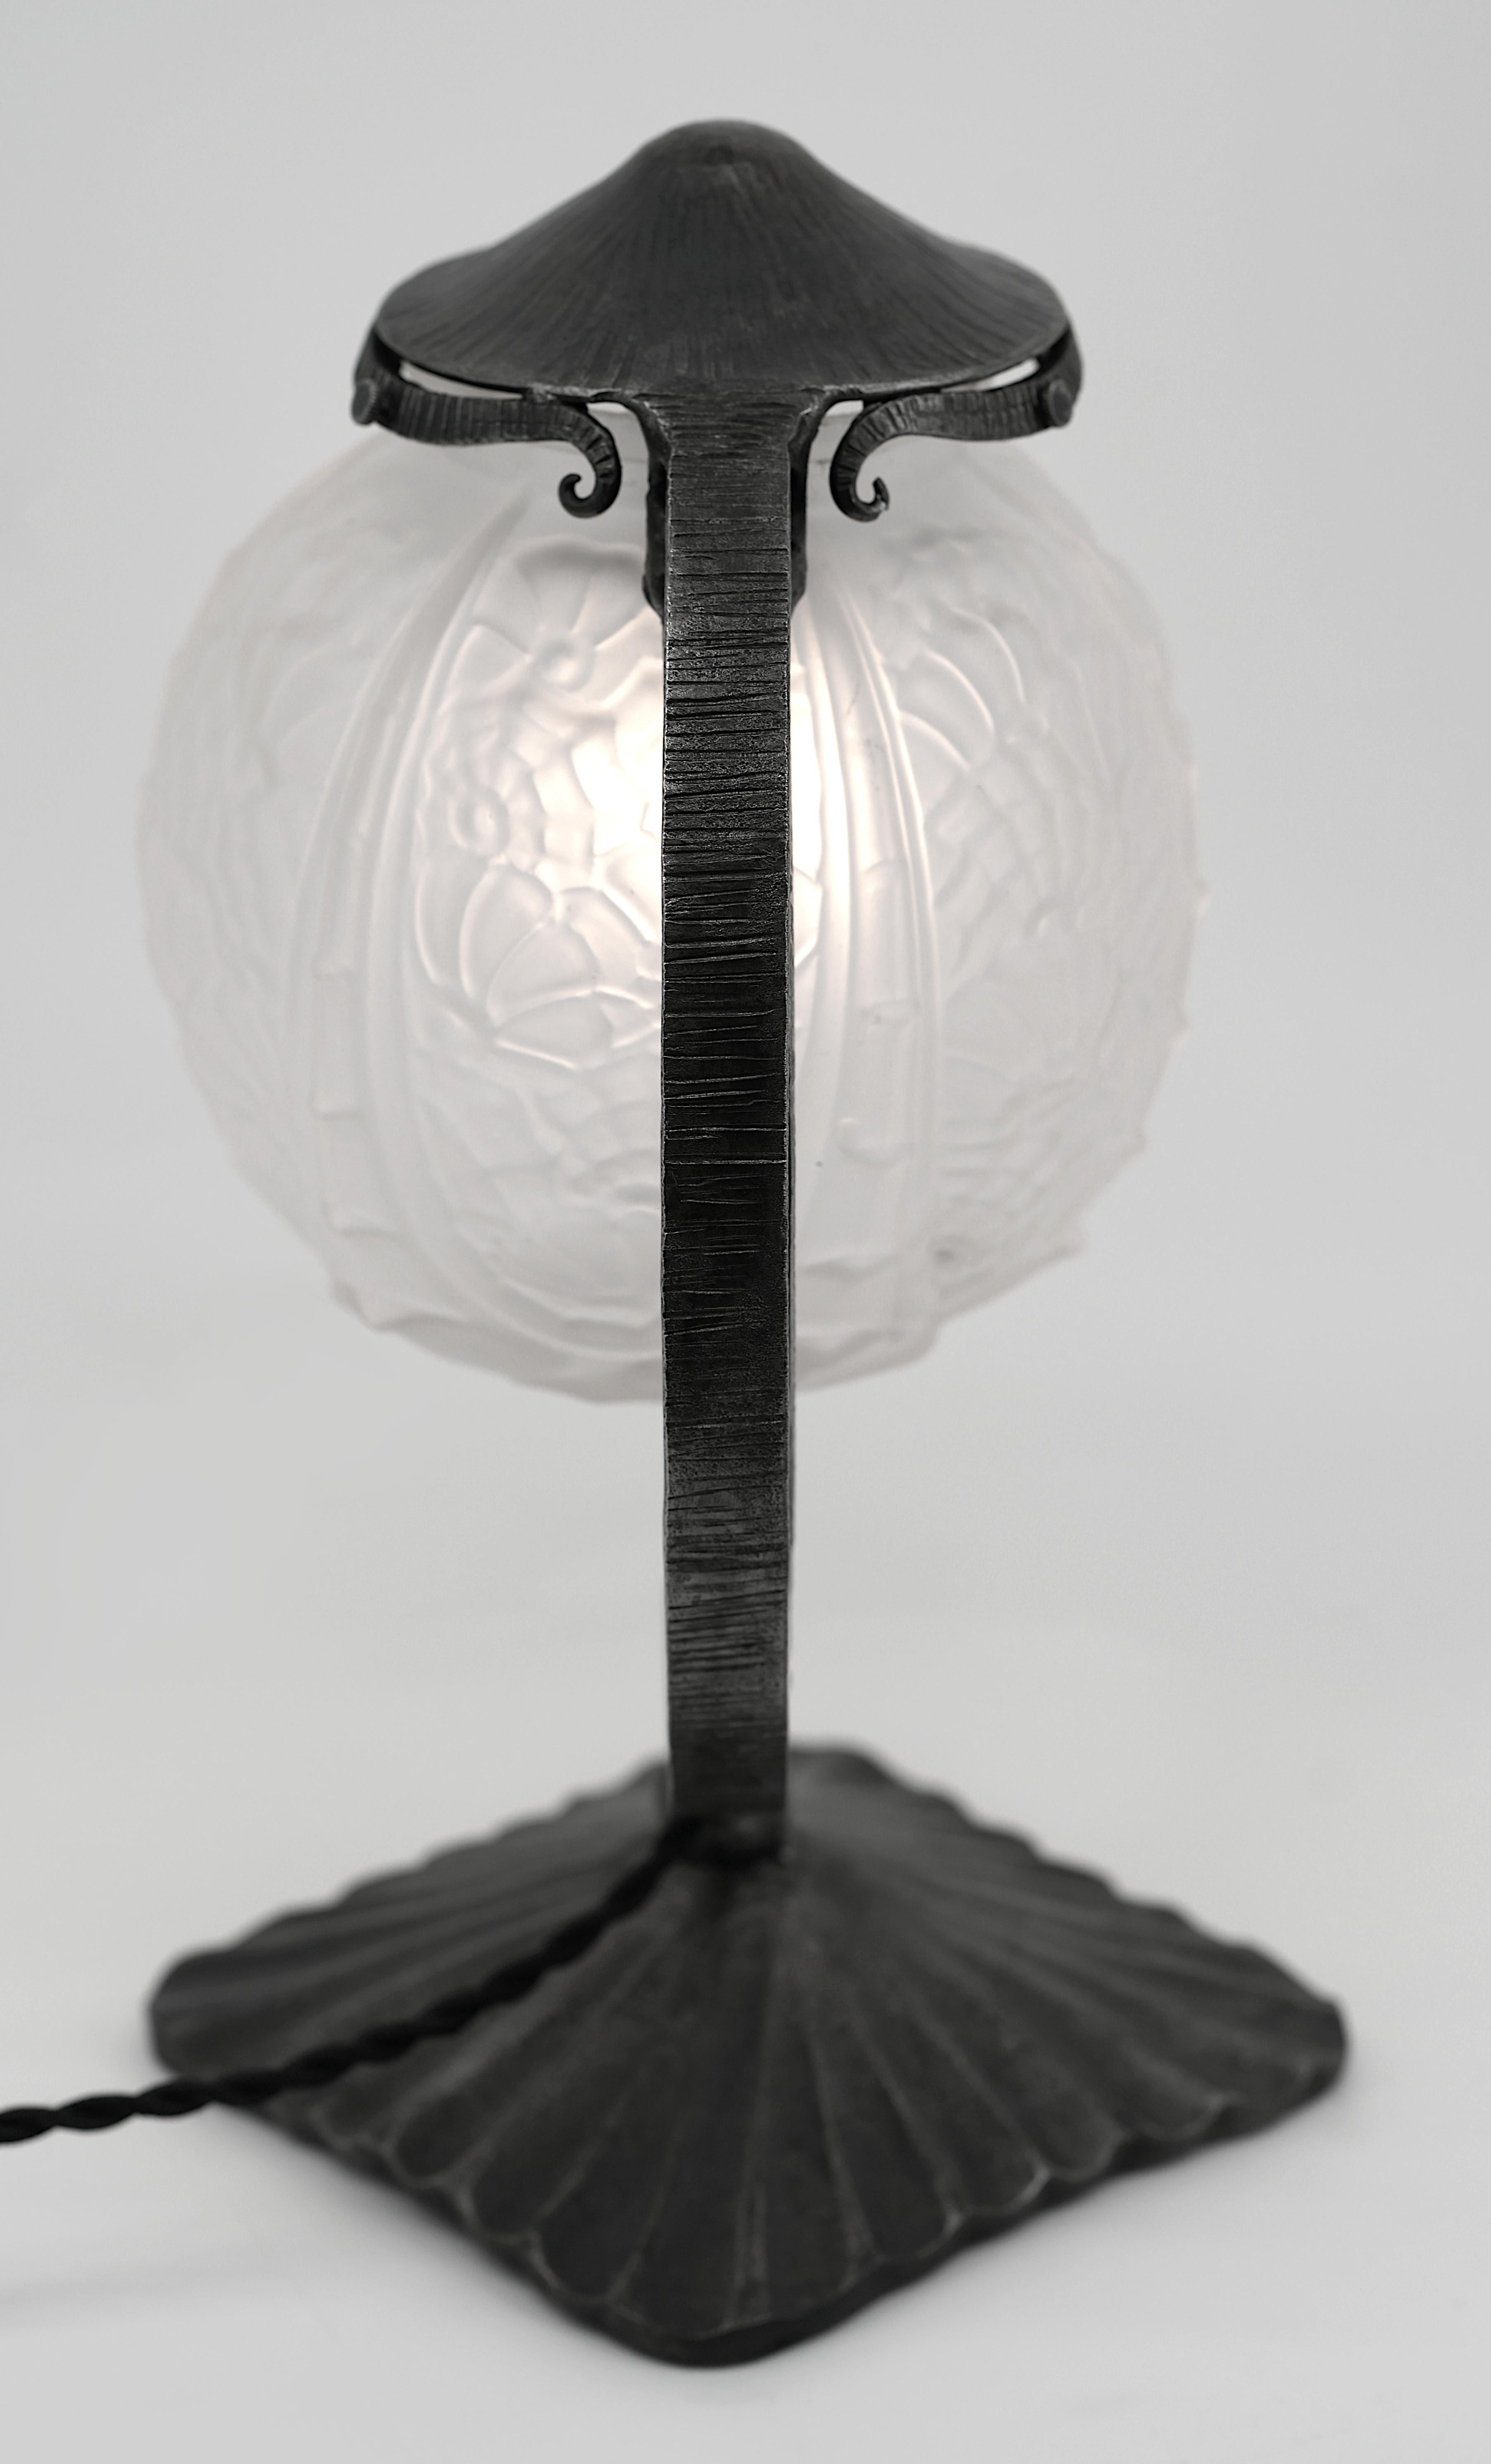 Molded Cherrier & Besnus French Art Deco Table Lamp, Ca.1925 For Sale